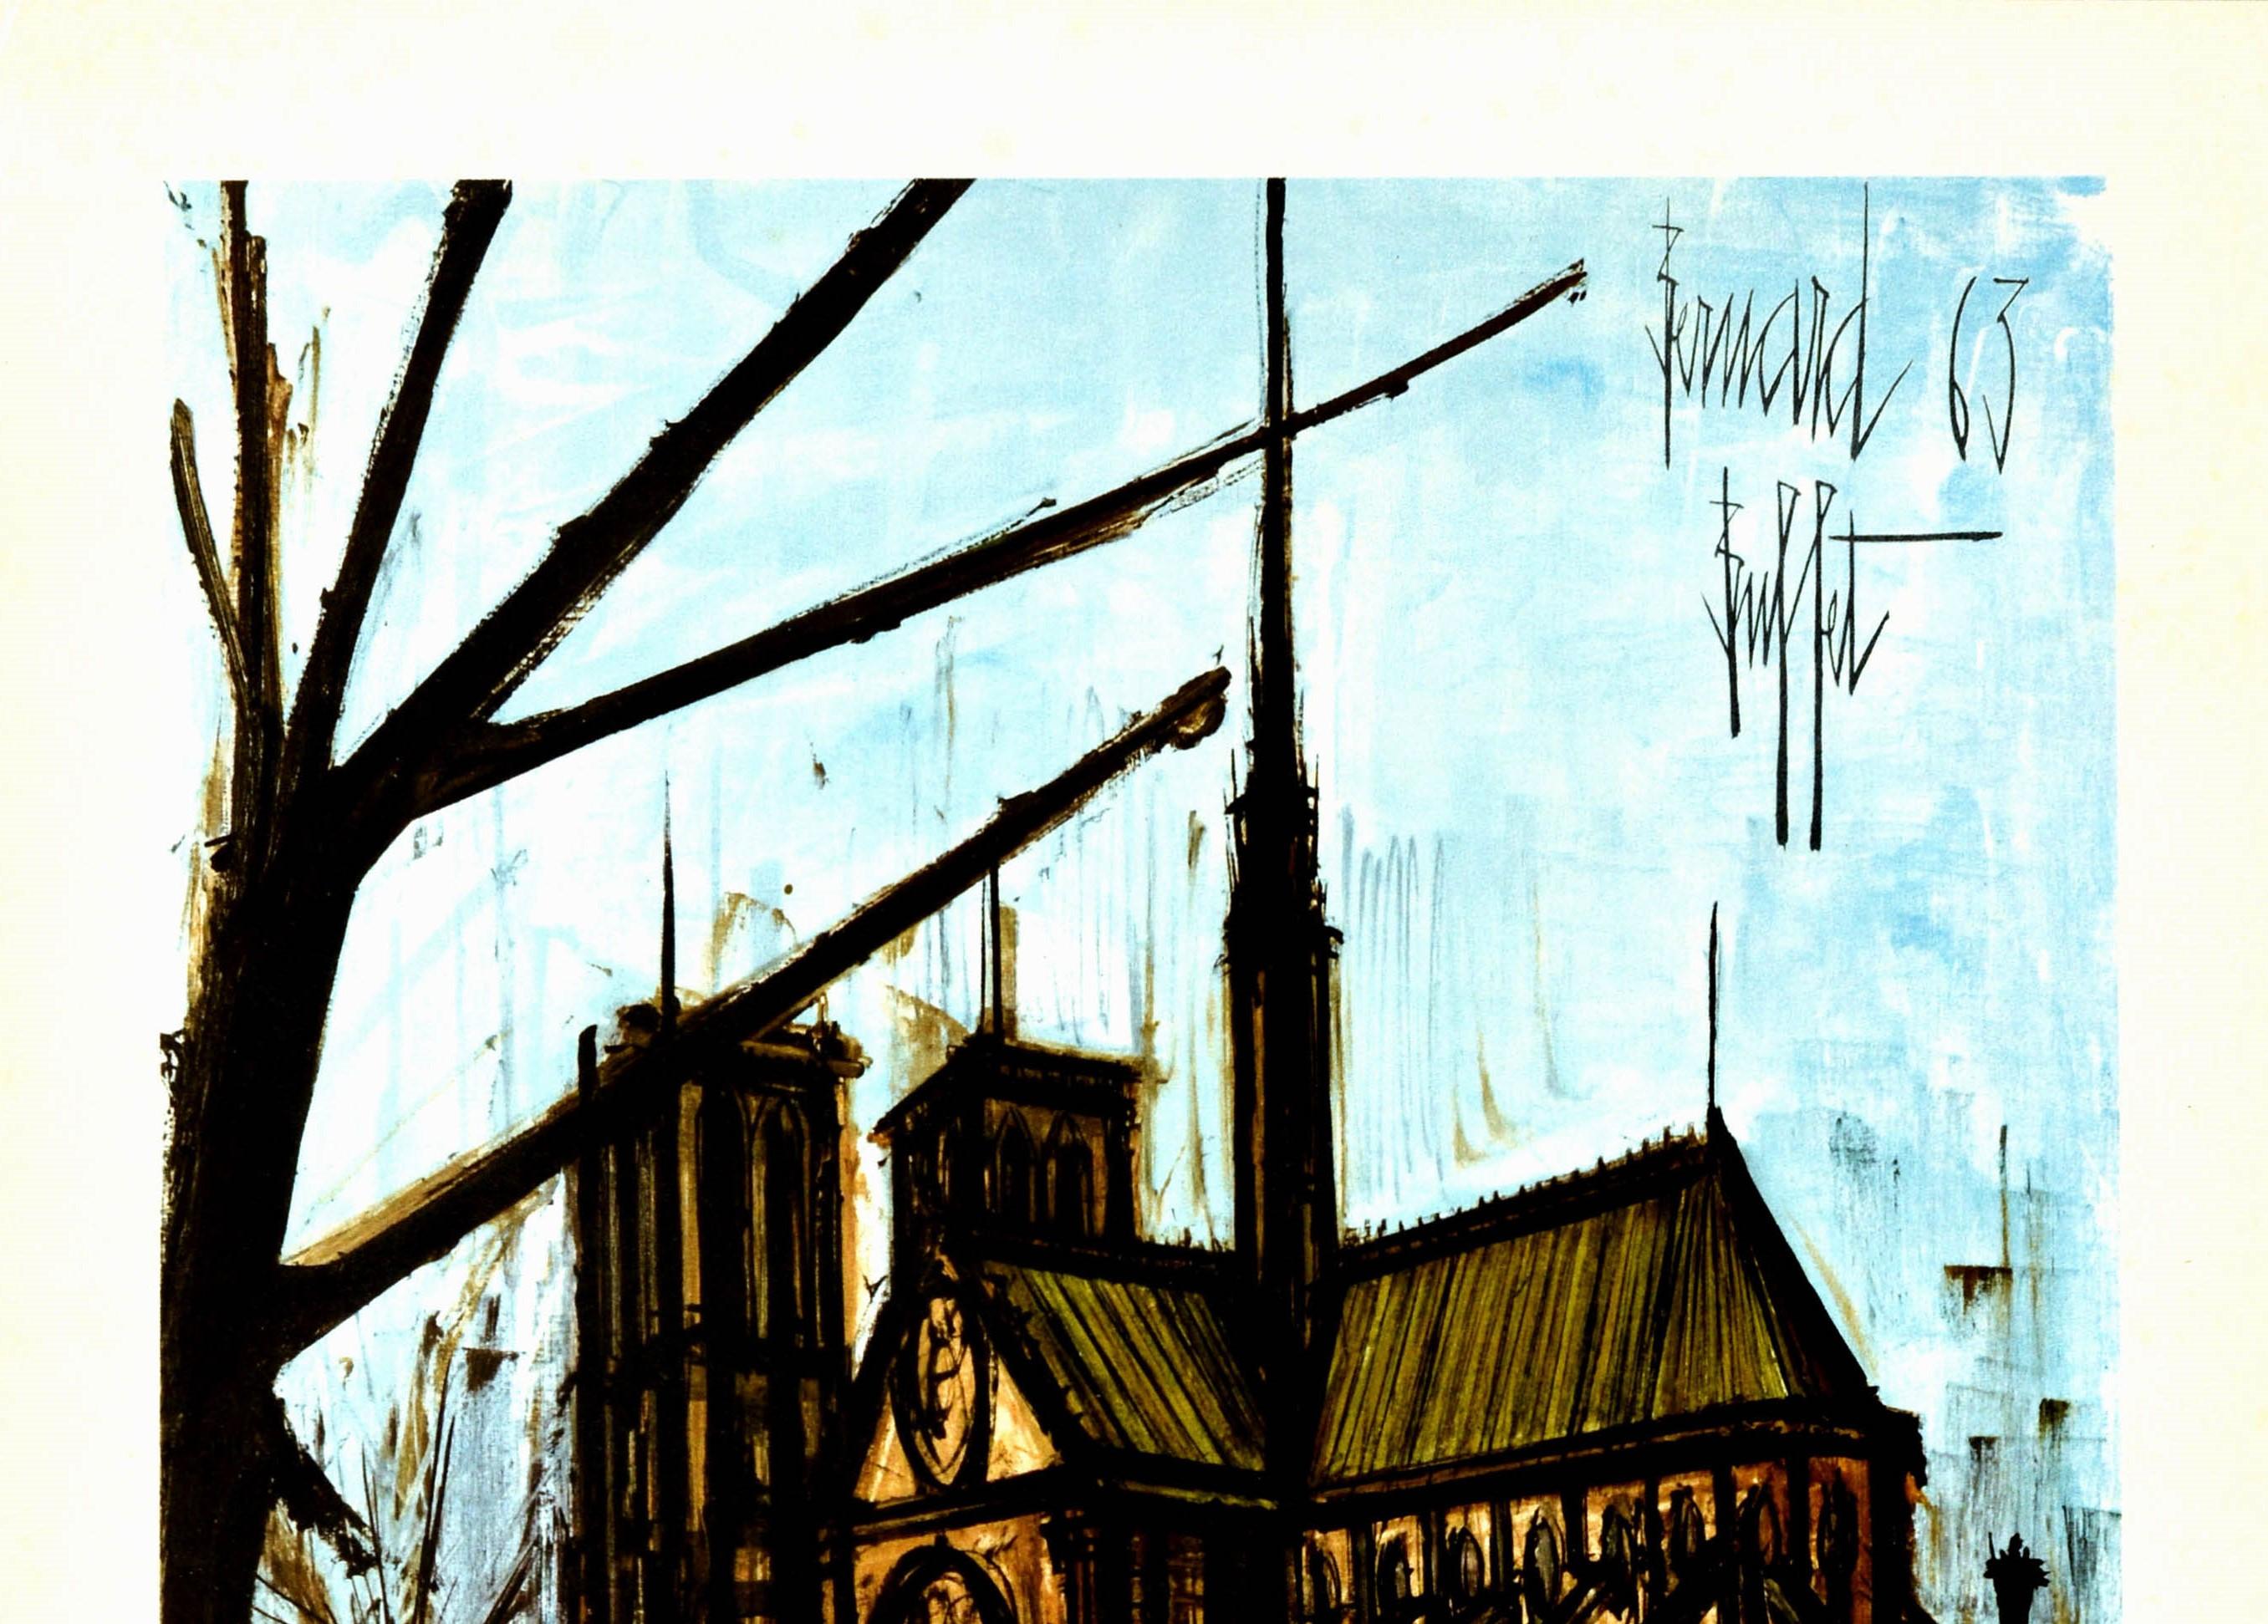 Original-Reiseplakat für Paris, herausgegeben von den französischen Staatsbahnen / Chemin De Fer Francais, mit einem großartigen Kunstwerk des bekannten französischen expressionistischen Malers Bernard Buffet (1928-1999), das die historische